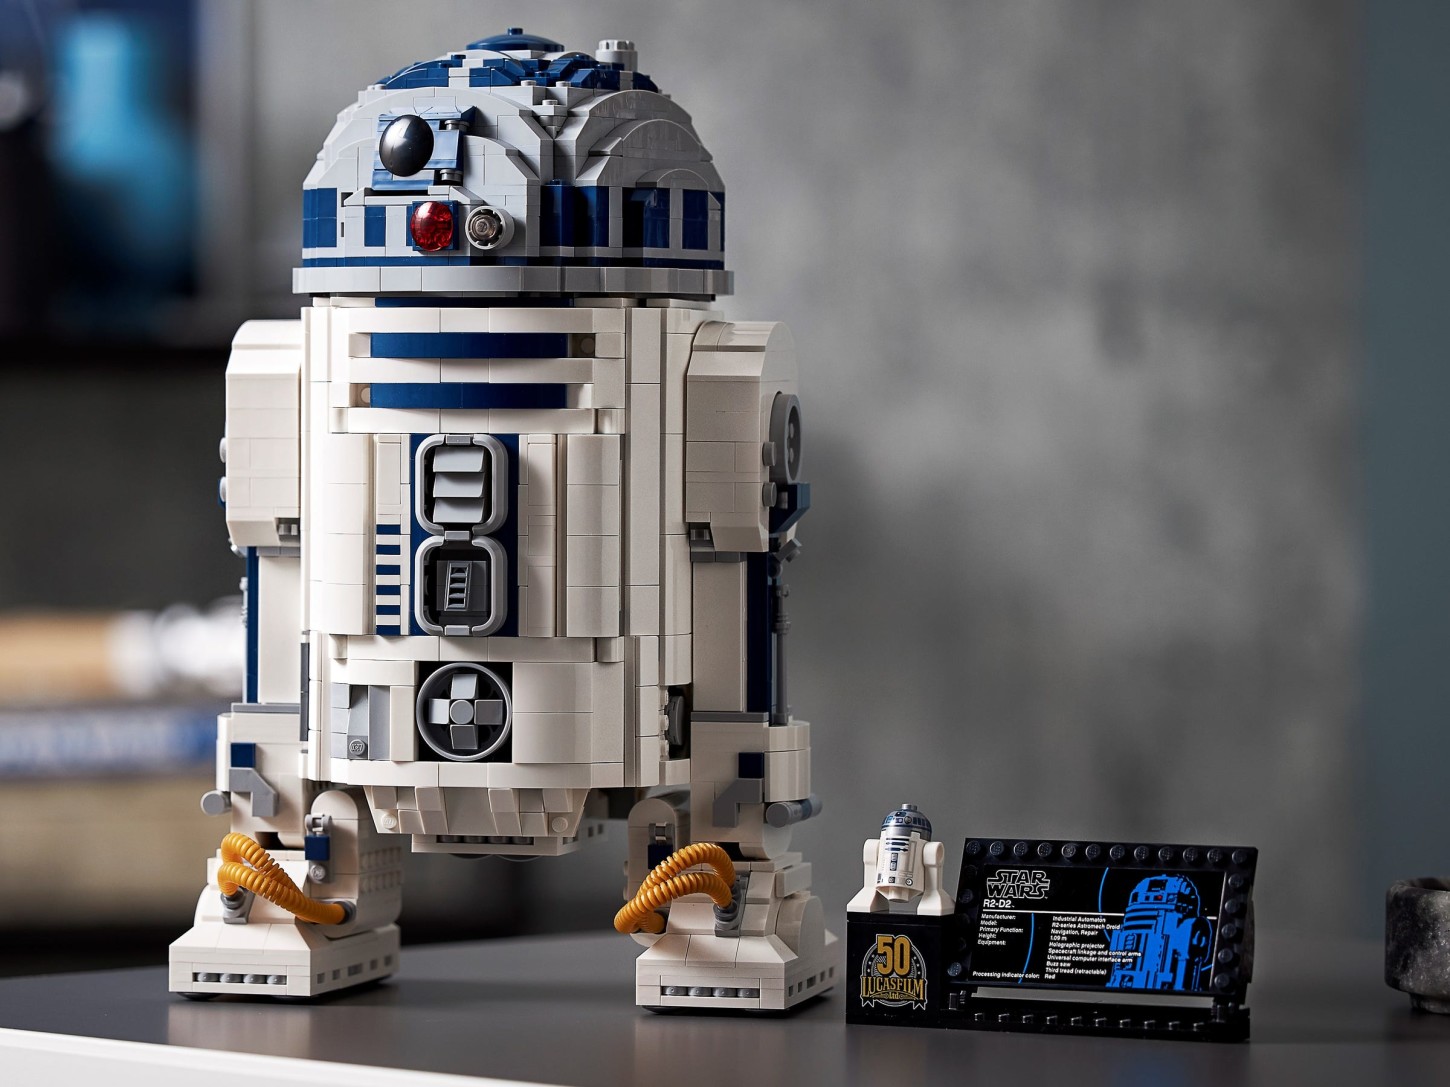 LEGO celebra el Día de Star Wars lanzando un set de R2D2 21